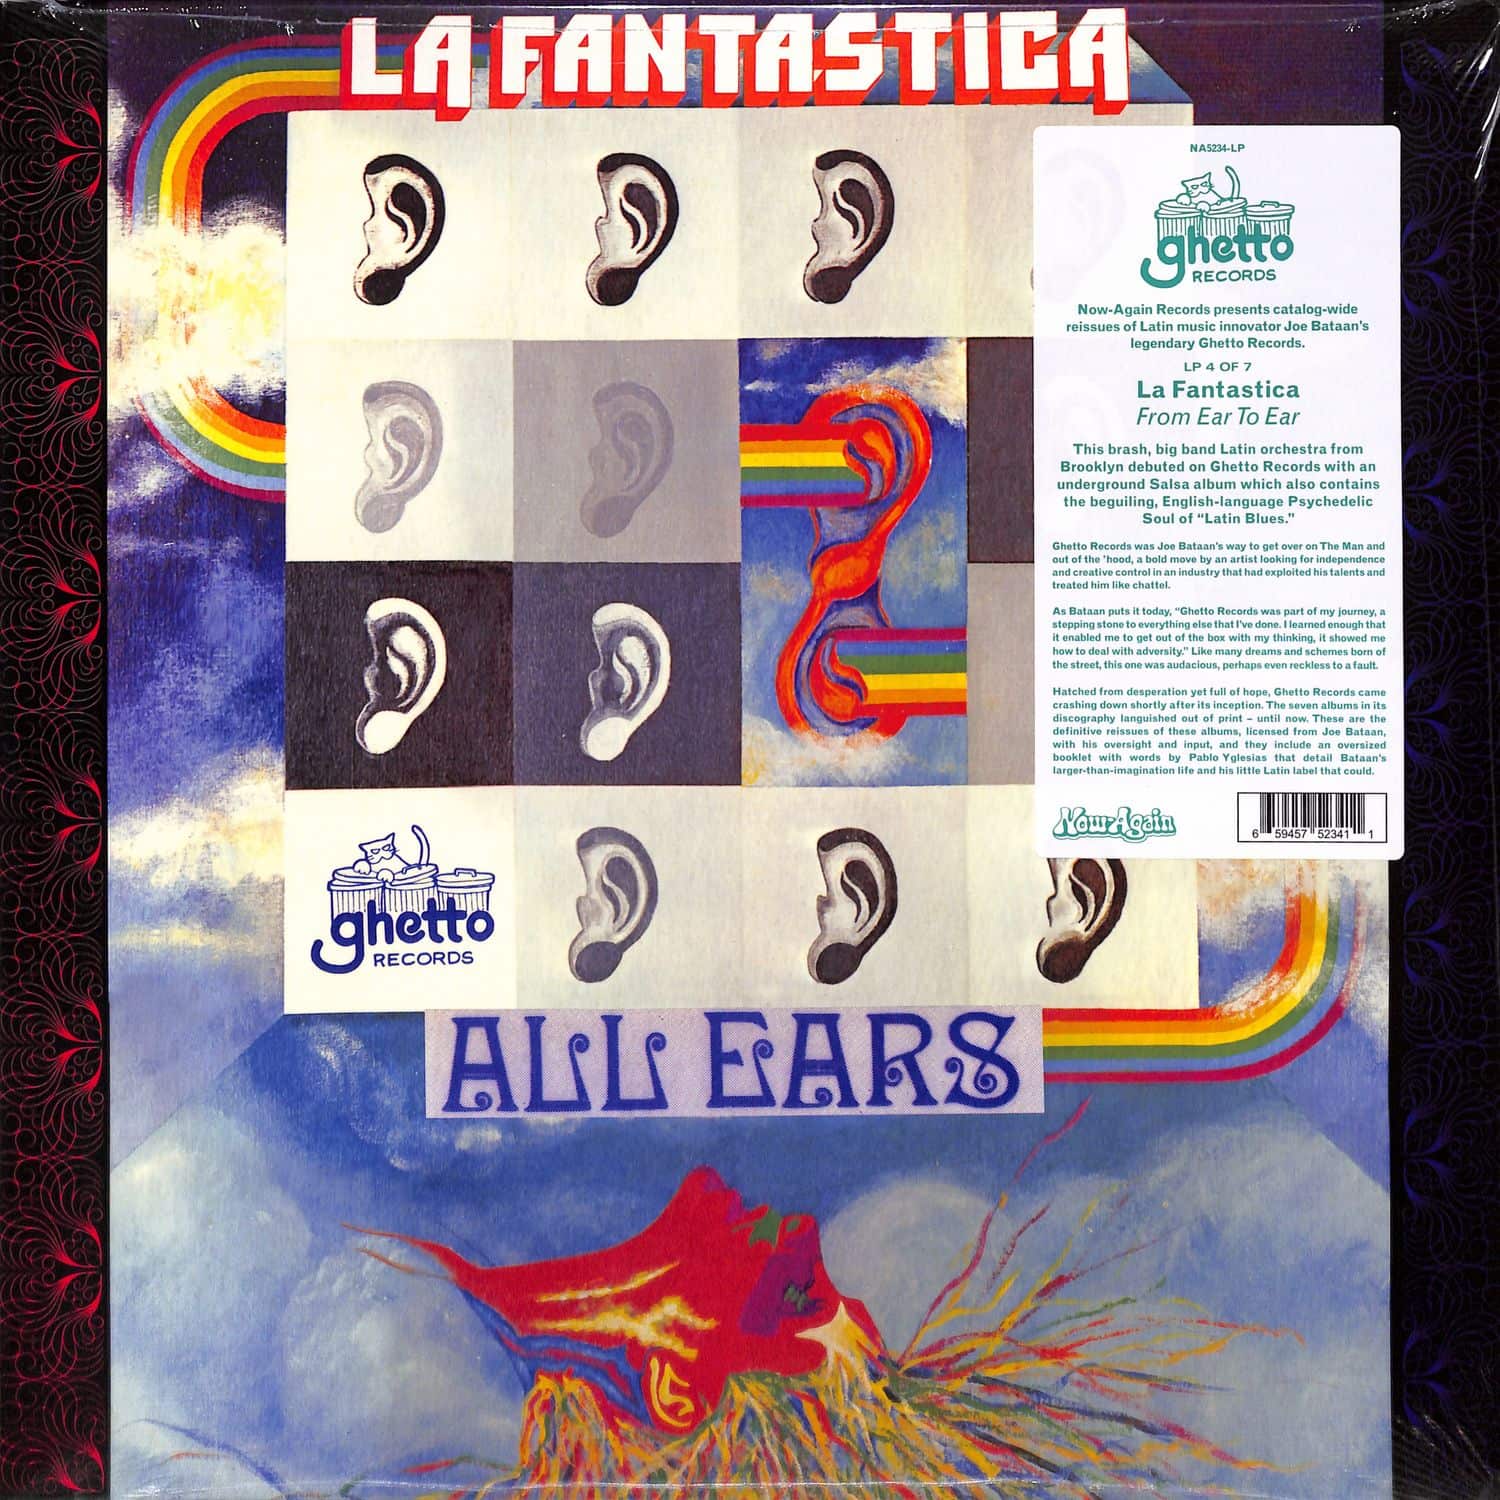 La Fantastica - FROM EAR TO EAR 